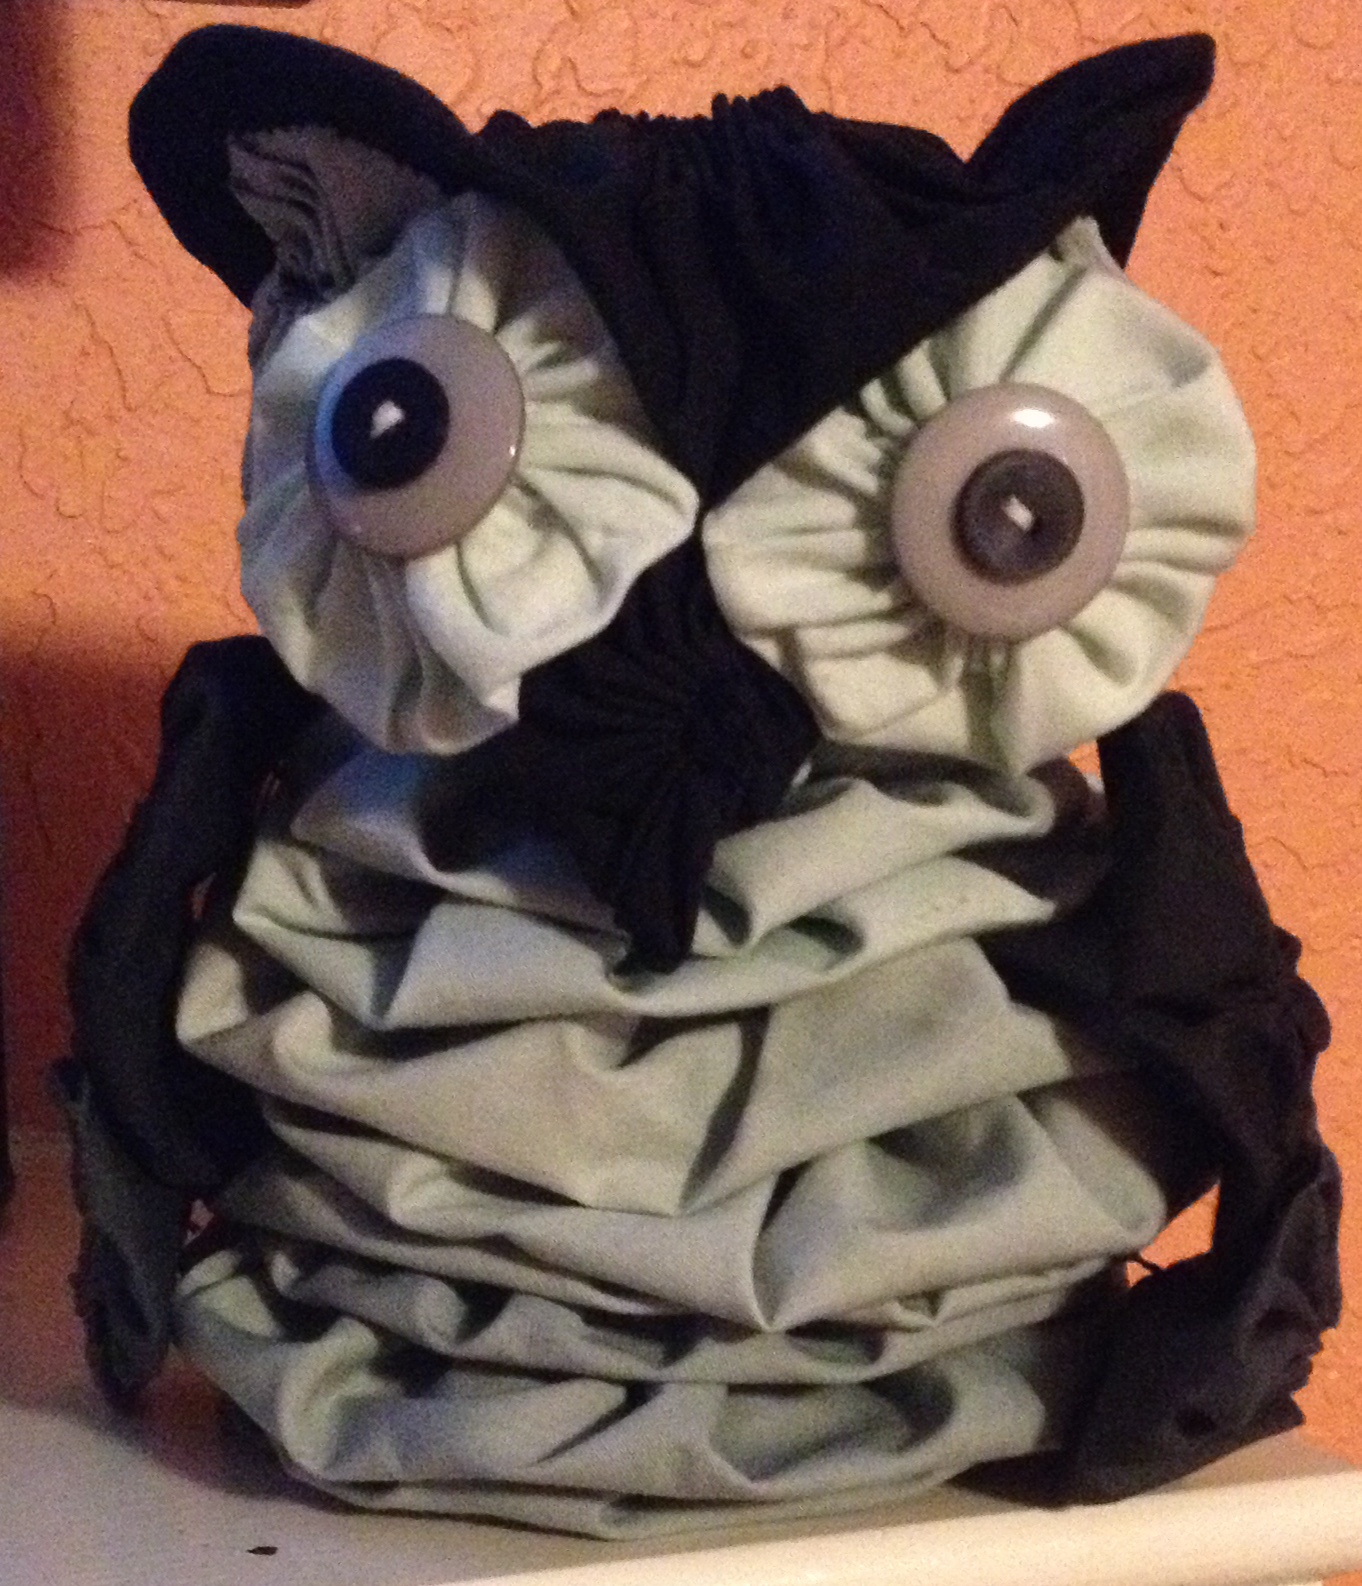 Thelma's owl